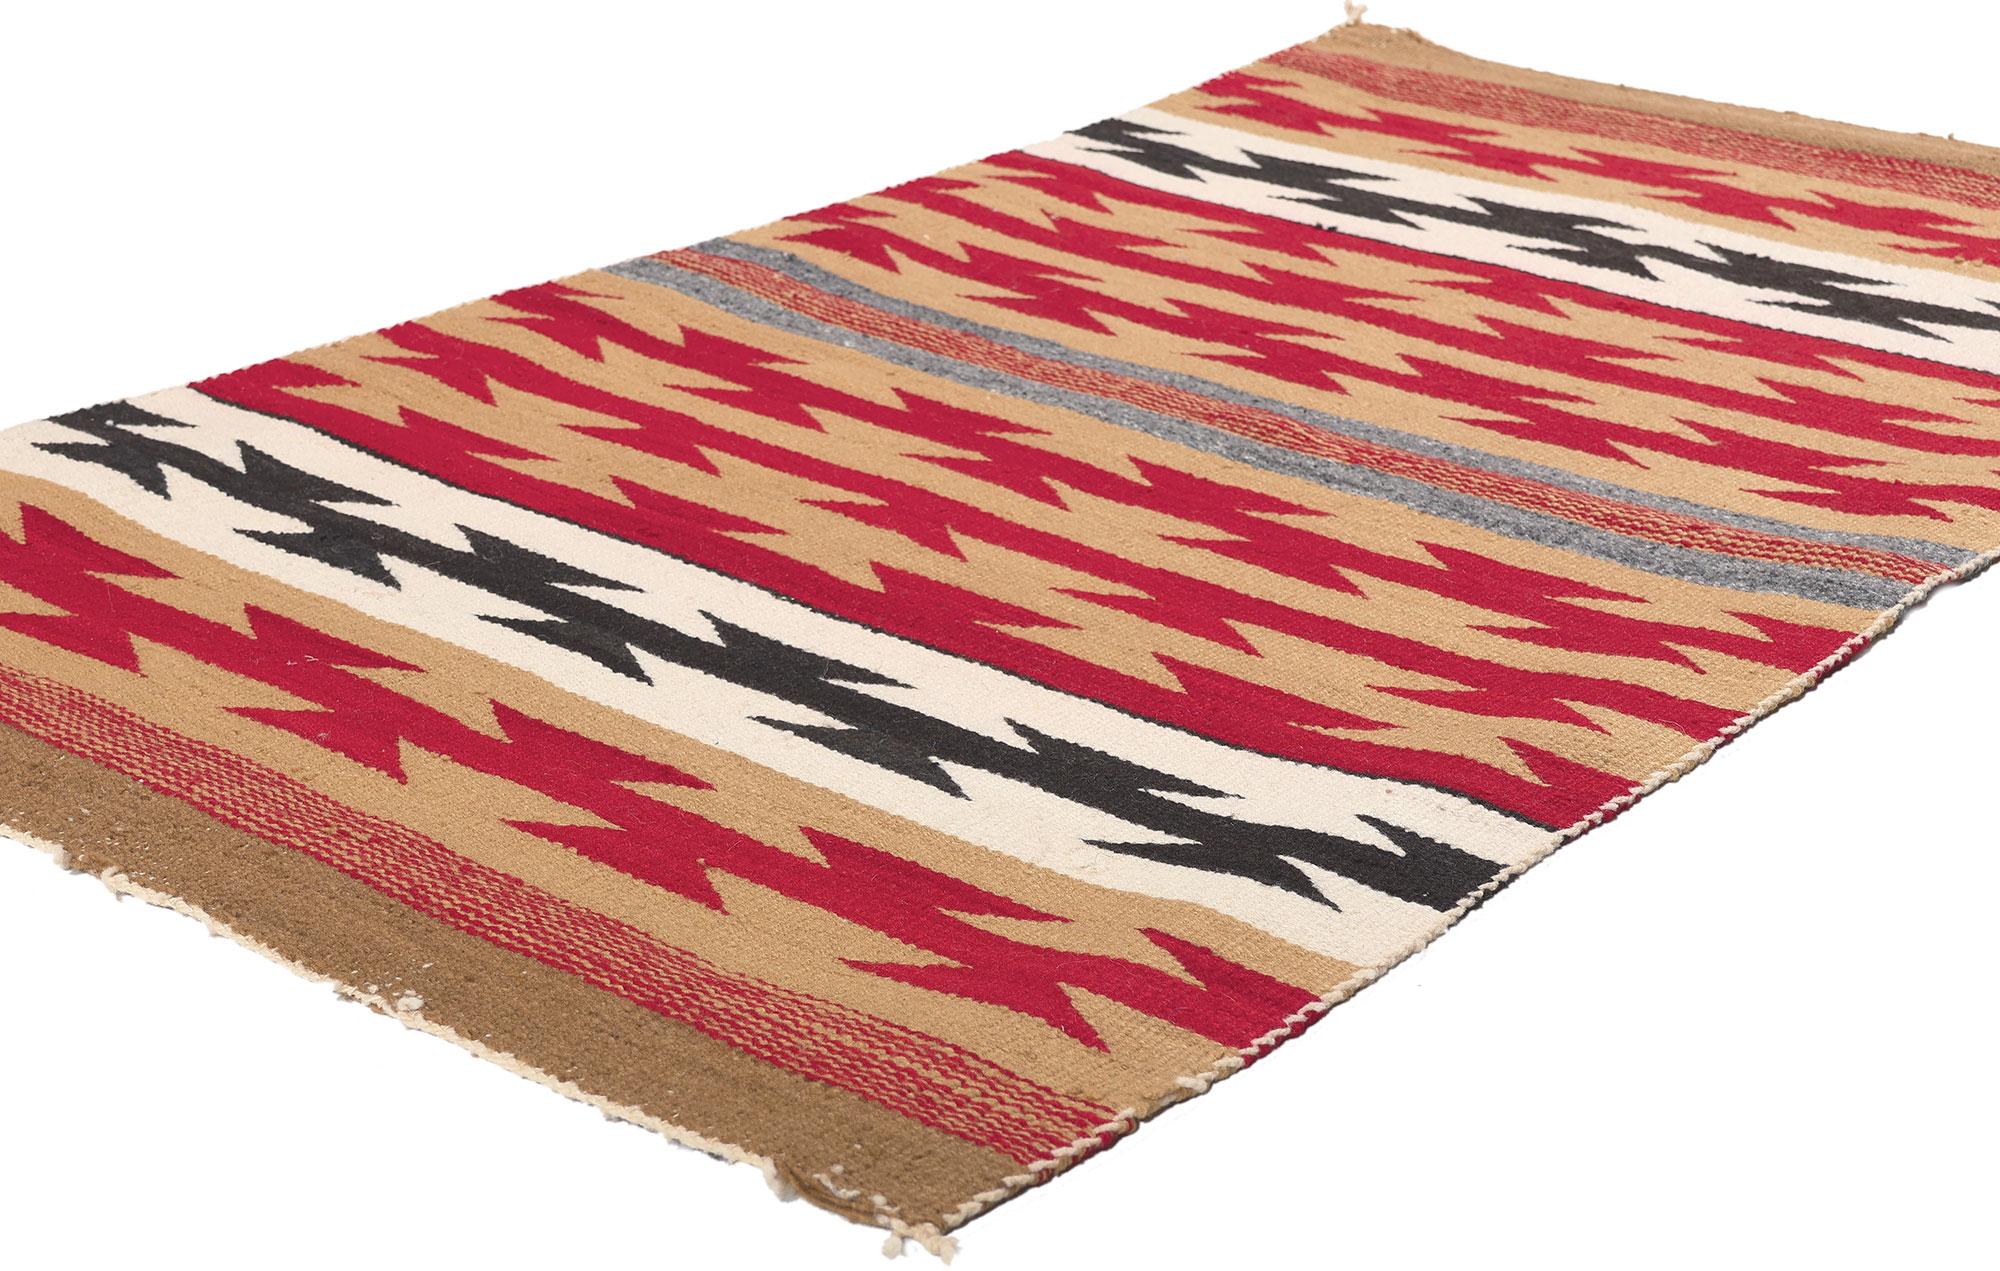 78558 Tapis Navajo Chinle antique, 02'09 x 04'06.
Emanant du style amérindien avec des détails et des textures incroyables, ce tapis Navajo Chinle tissé à la main est une vision captivante de la beauté tissée. Le motif géométrique accrocheur et le